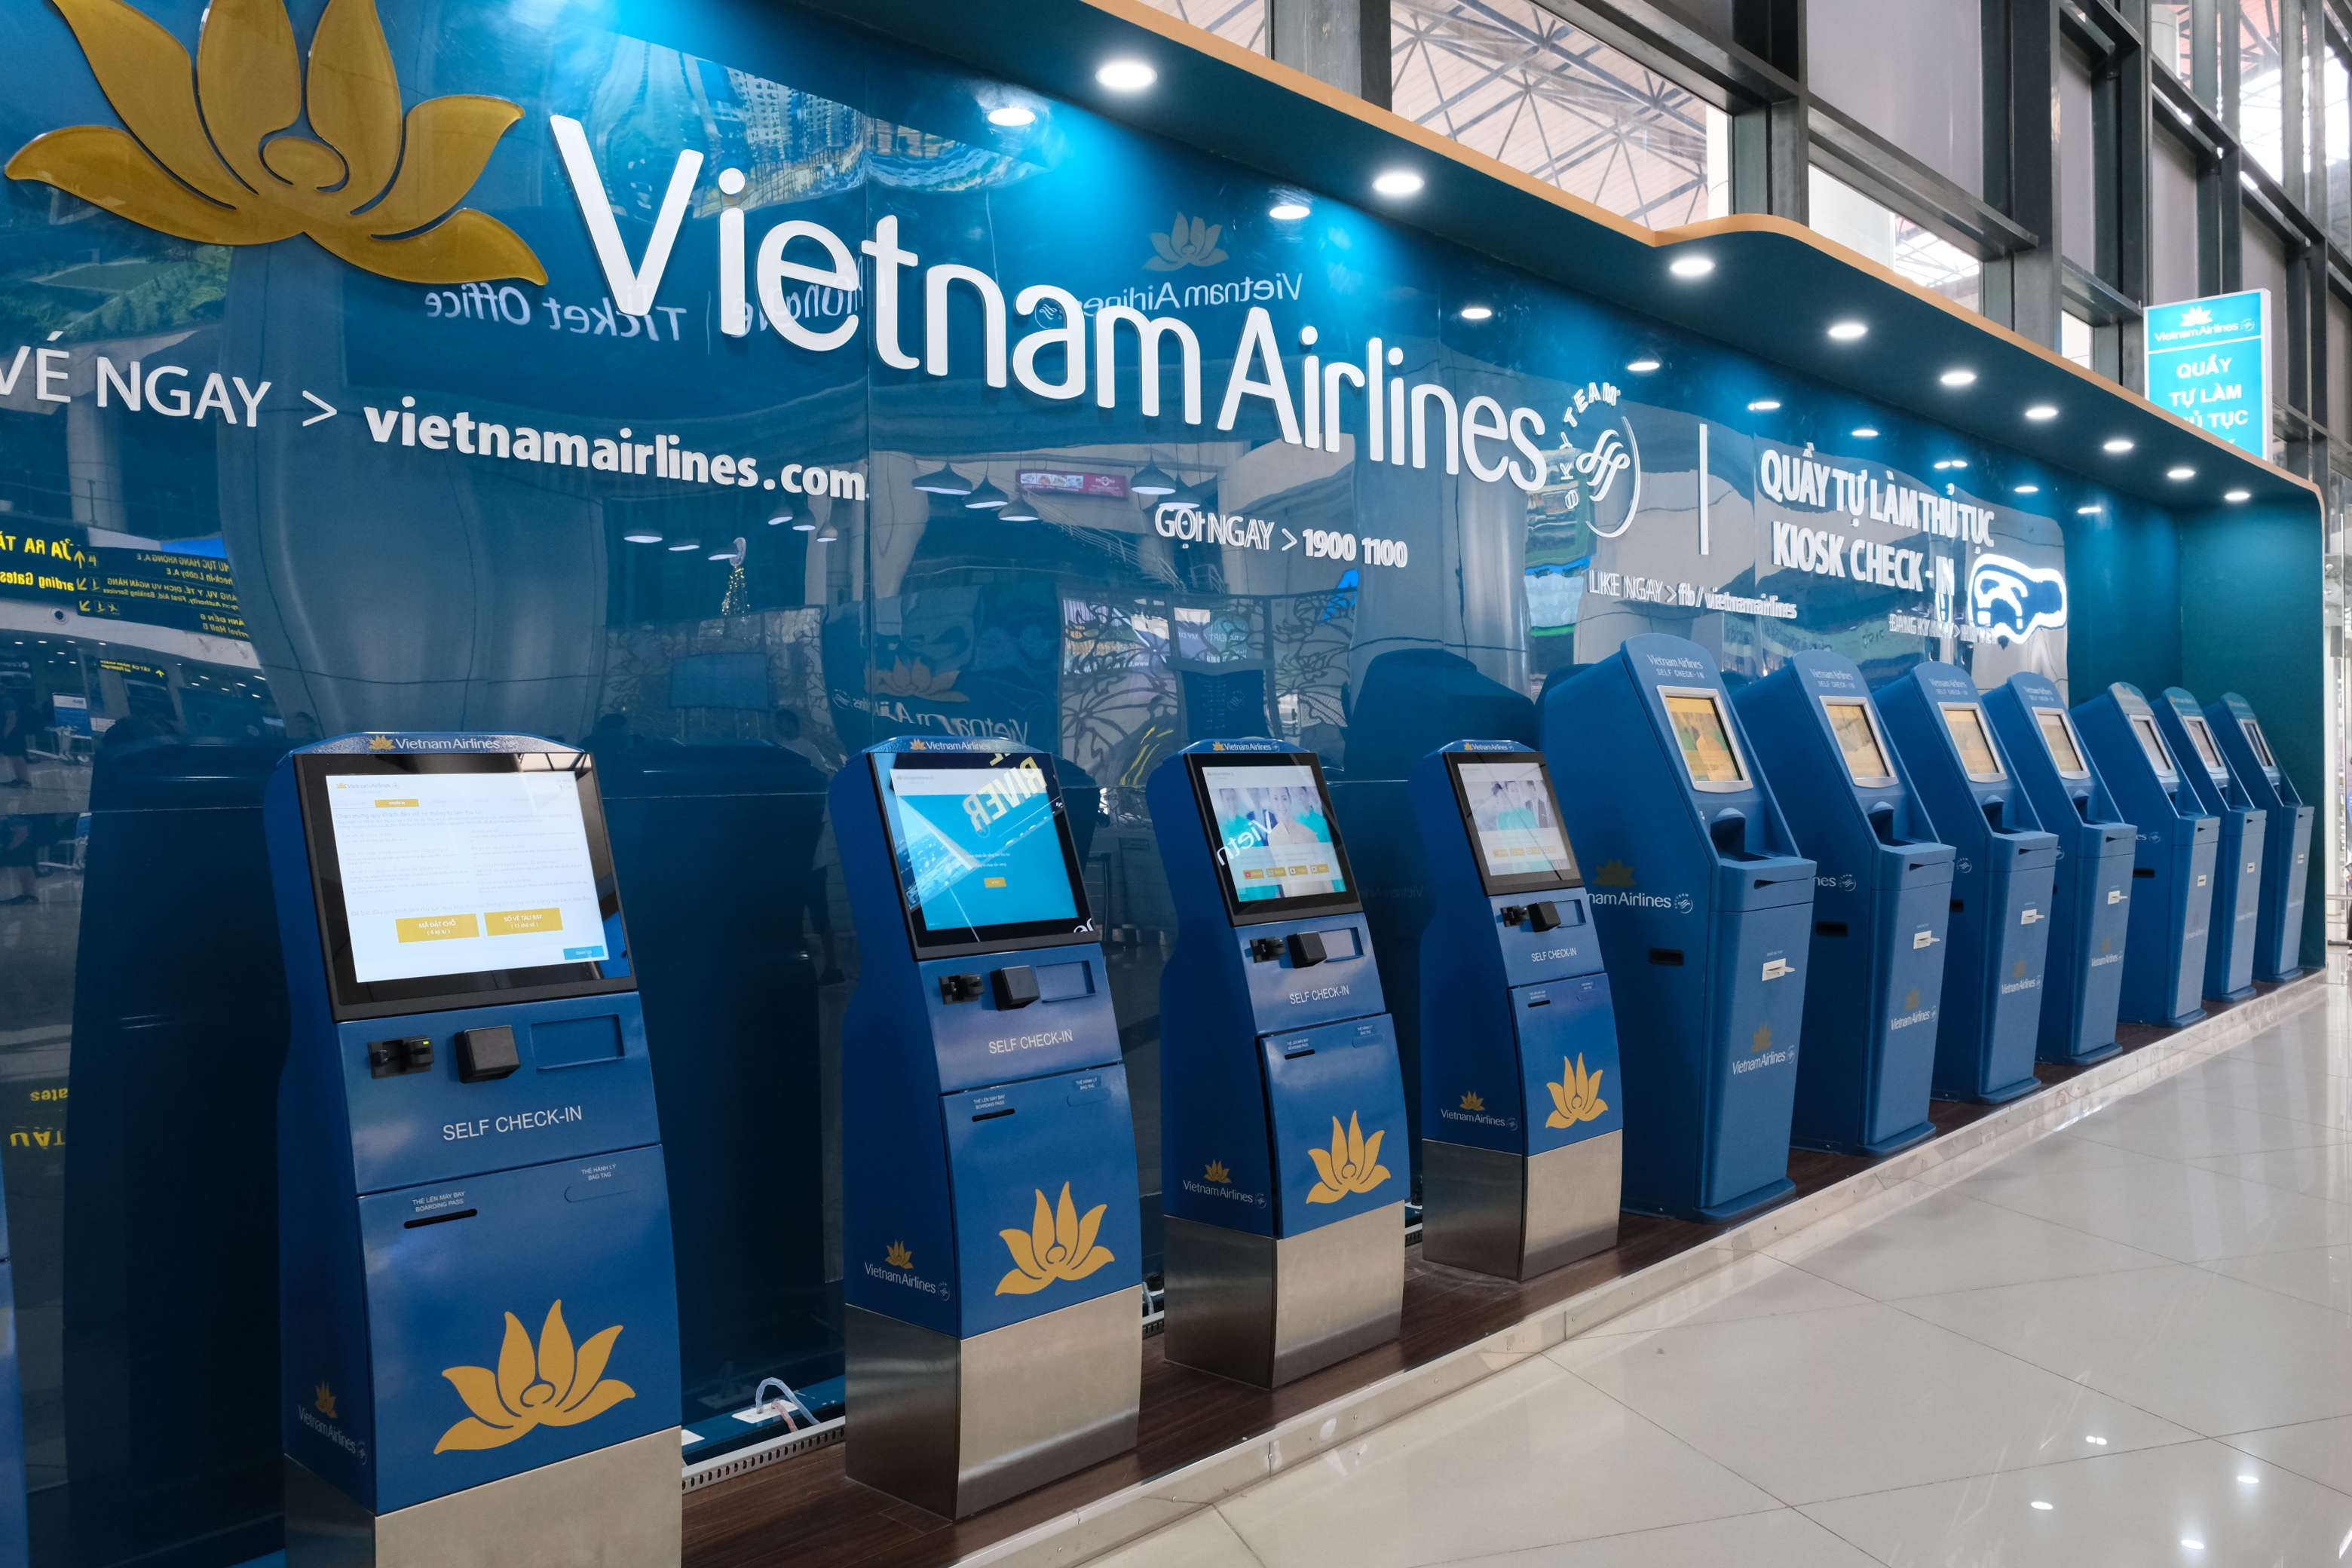 Quầy kiosk check-in của Vietnam Airlines tại sân bay Nội Bài. Ảnh: vietnamairlines.